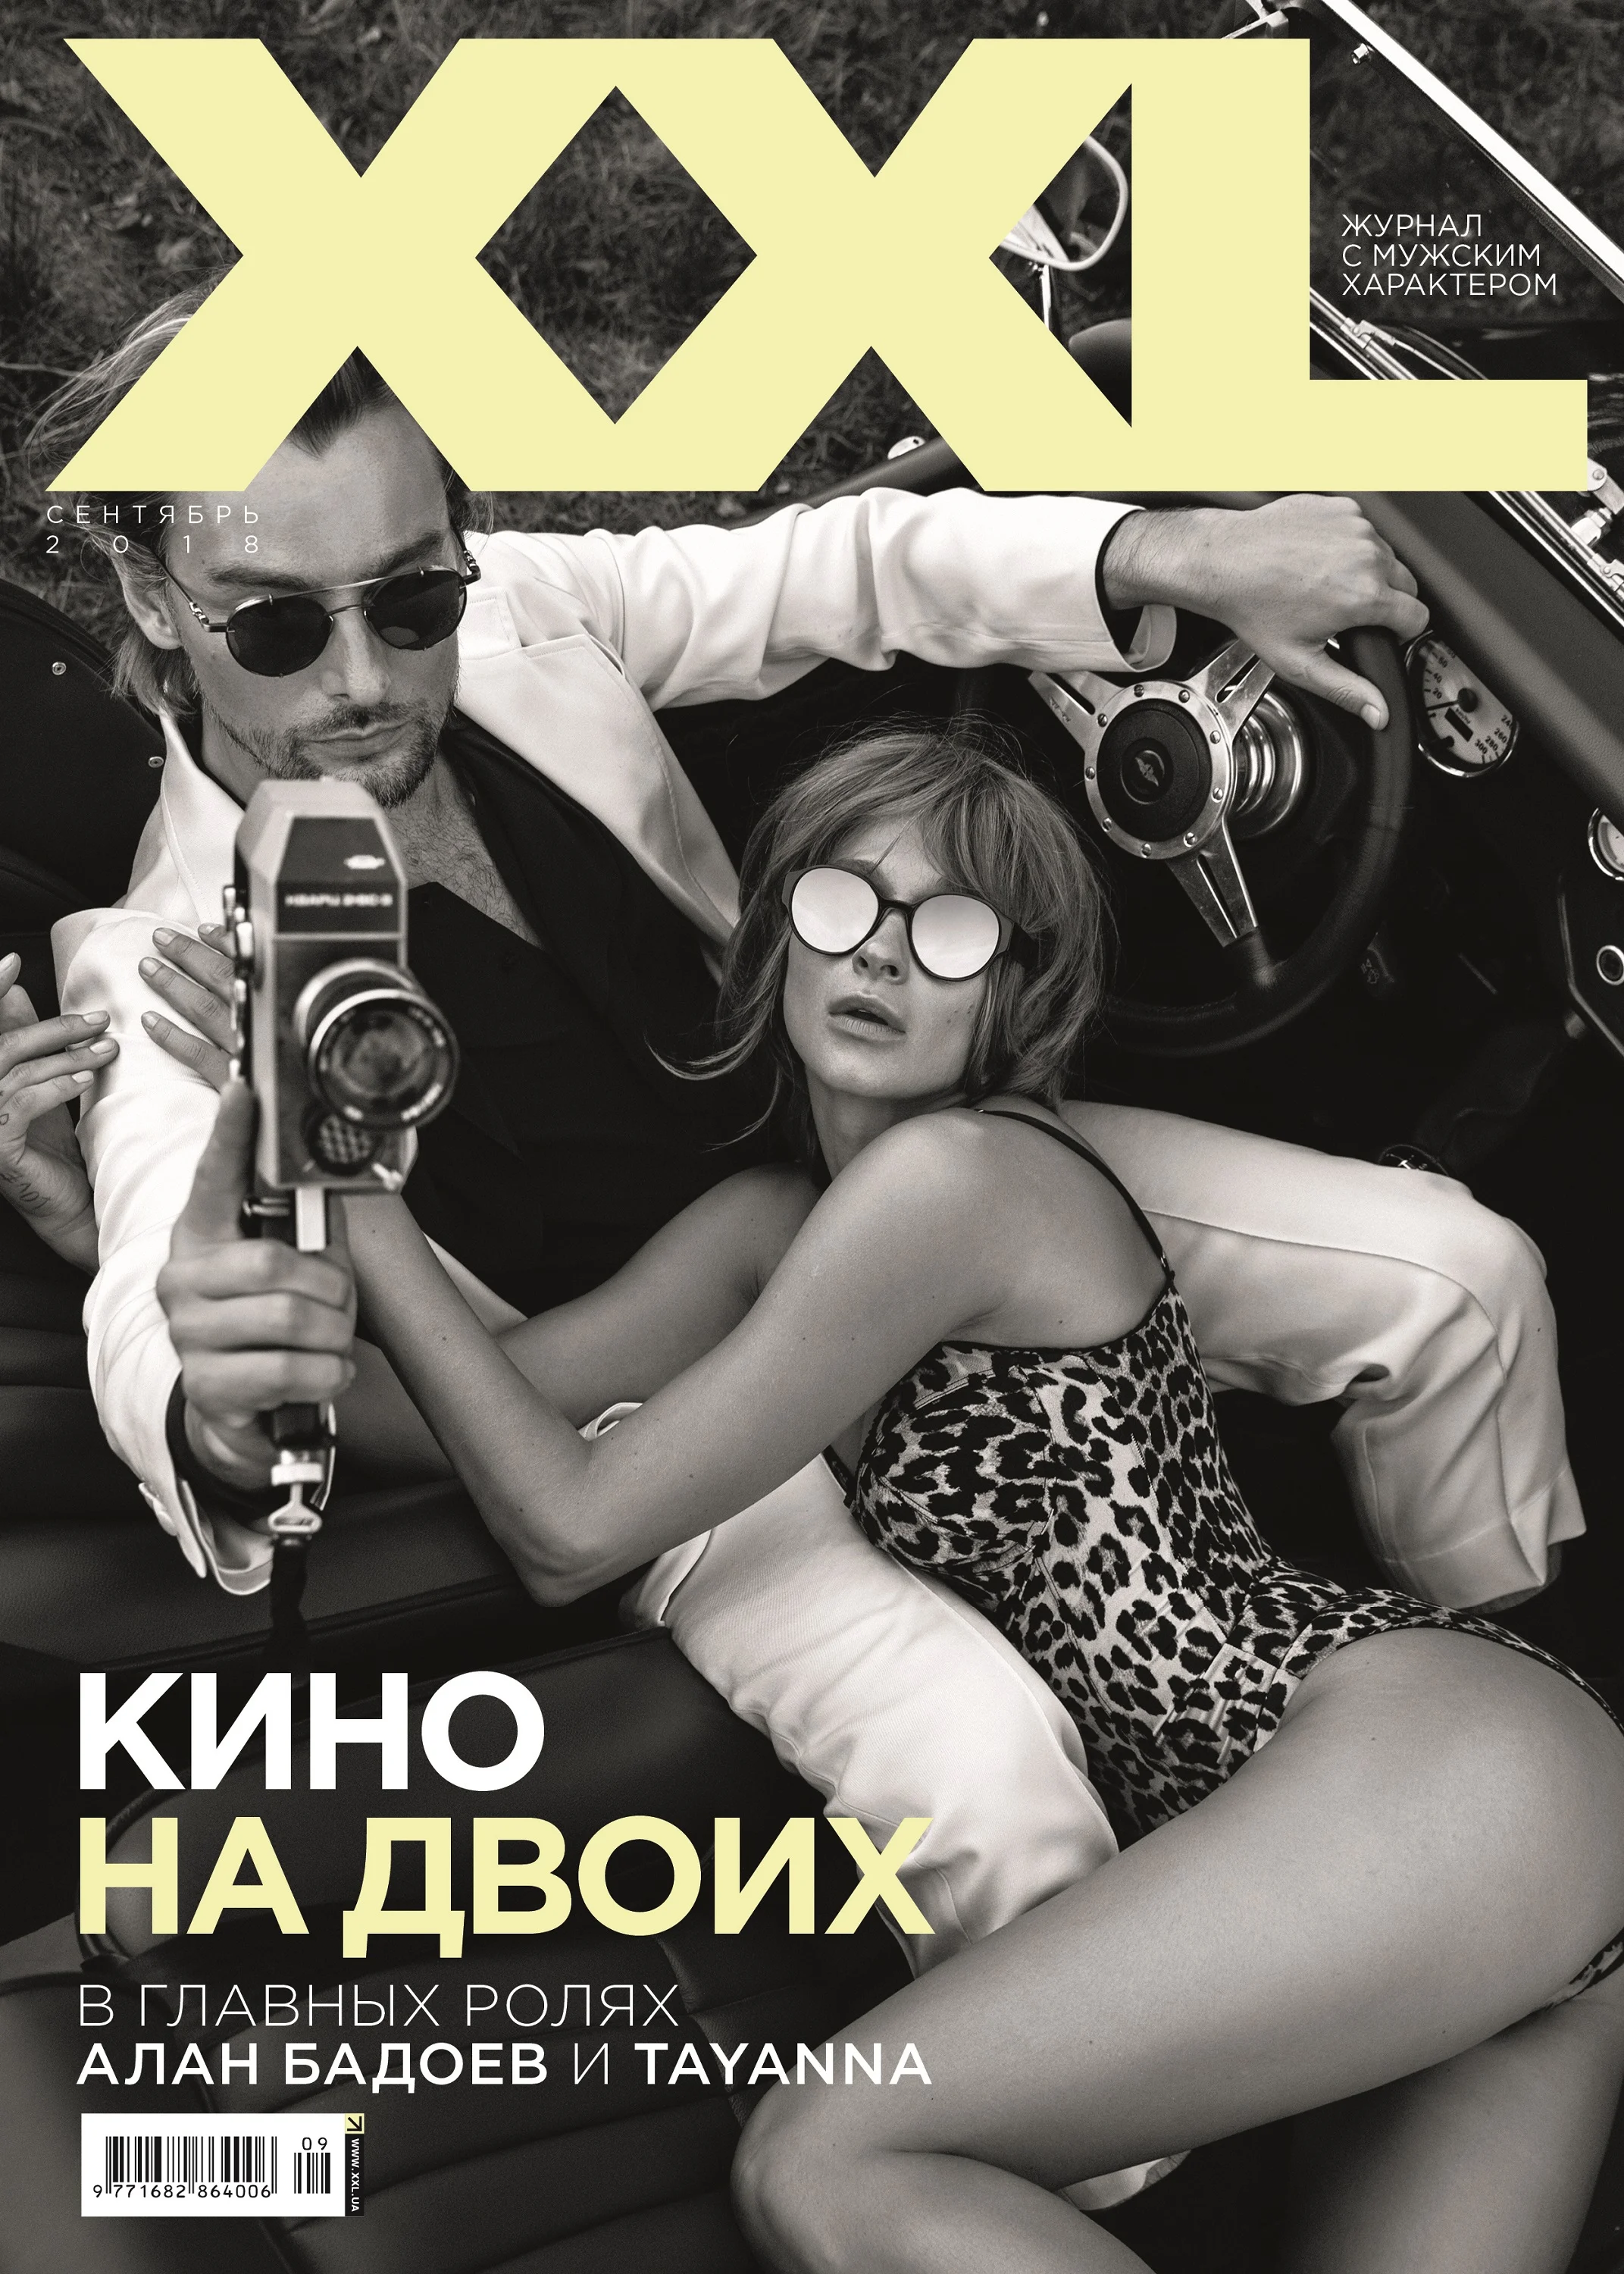 Коли еротика - мистецтво : Алан Бадоєв і TAYANNA стали головними бунтарями цієї осені - фото 400940